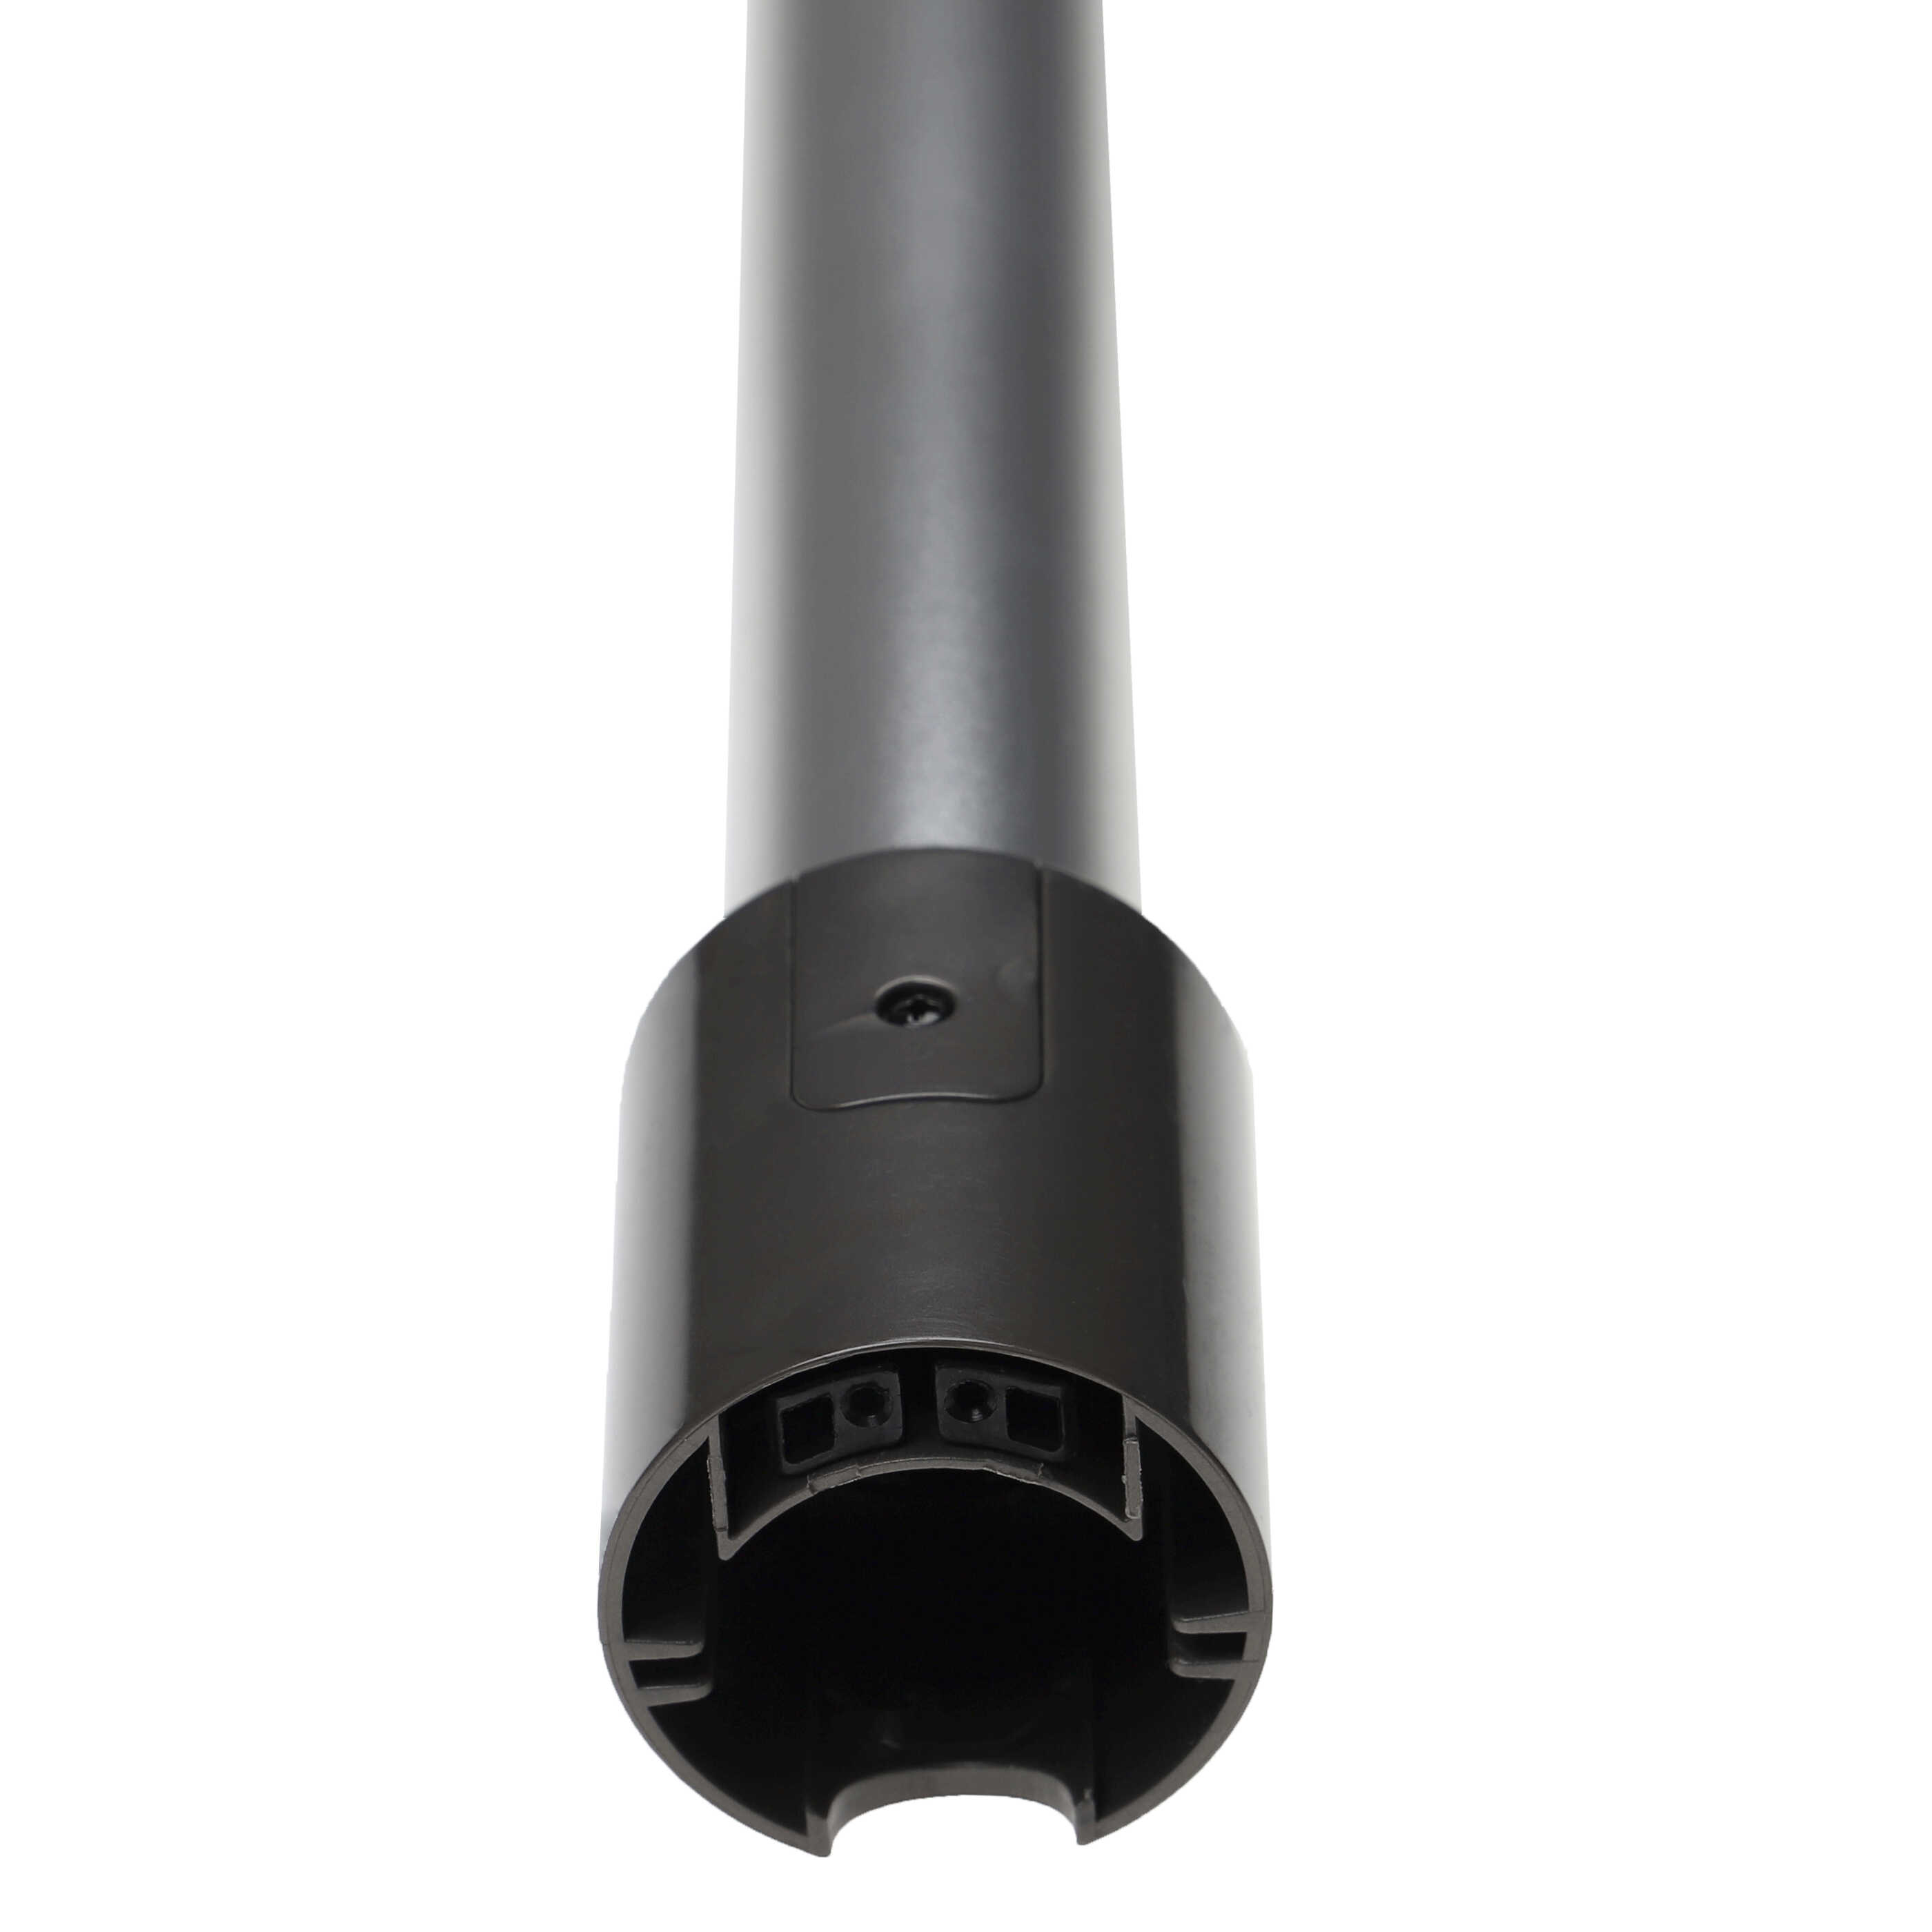 Tube for Dyson V10, V11, V15, V7, V8 vacuum cleaner - Length: 72.5, silver